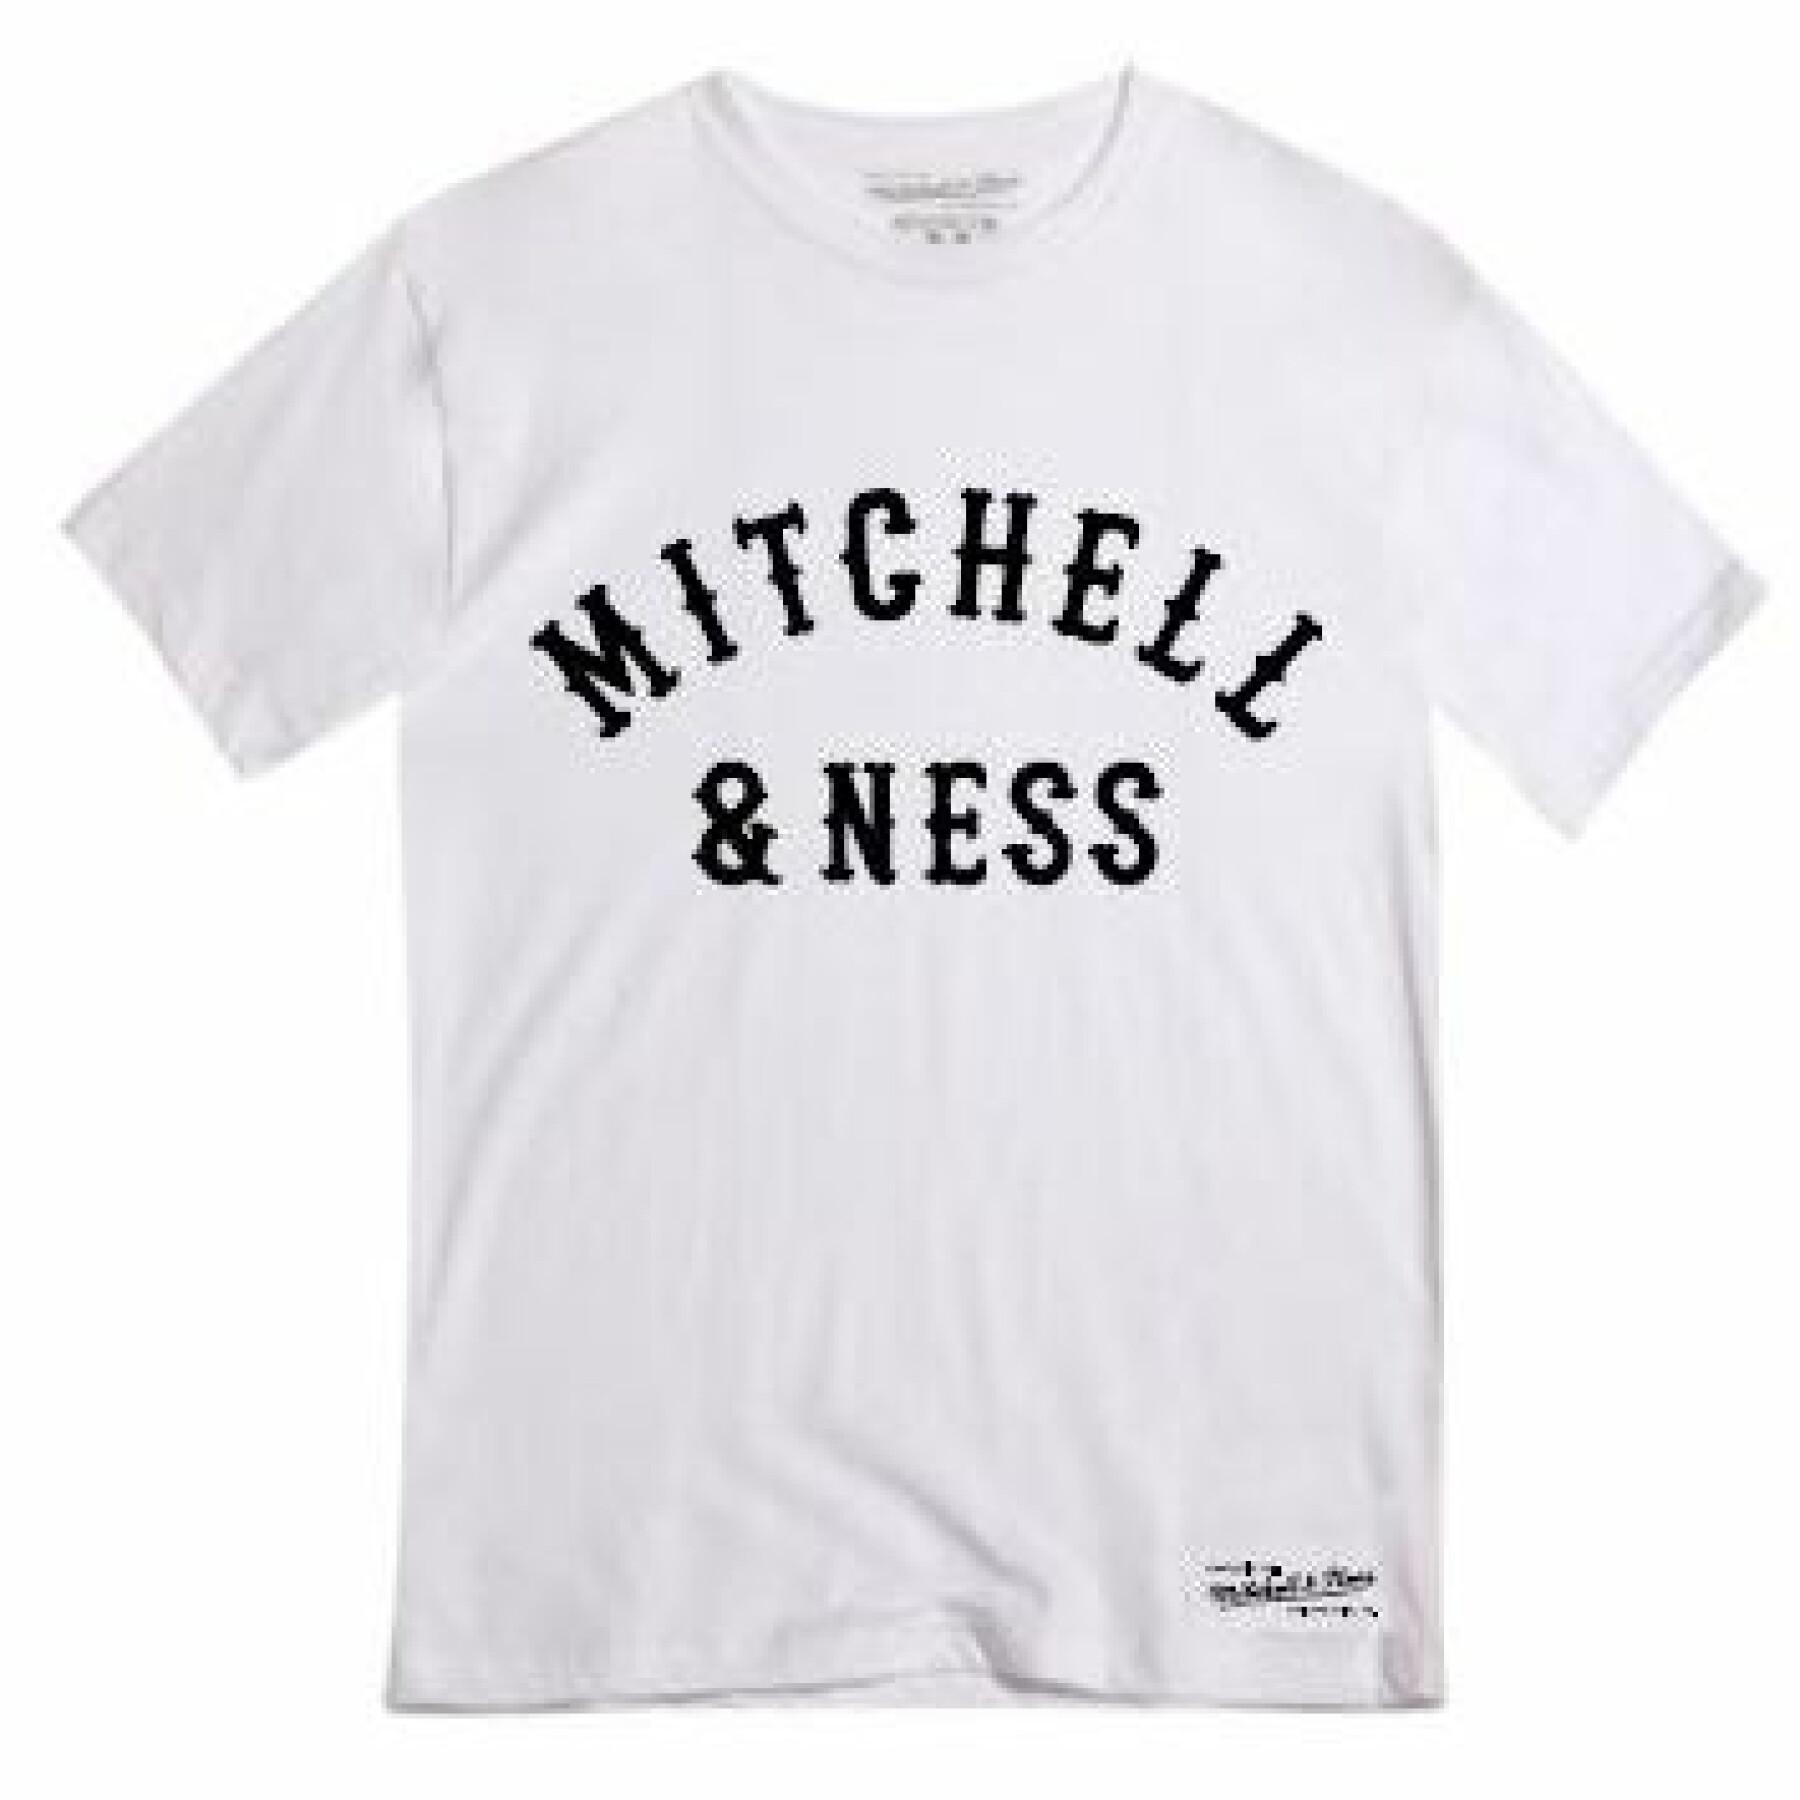 Camiseta Mitchell & Ness patriot